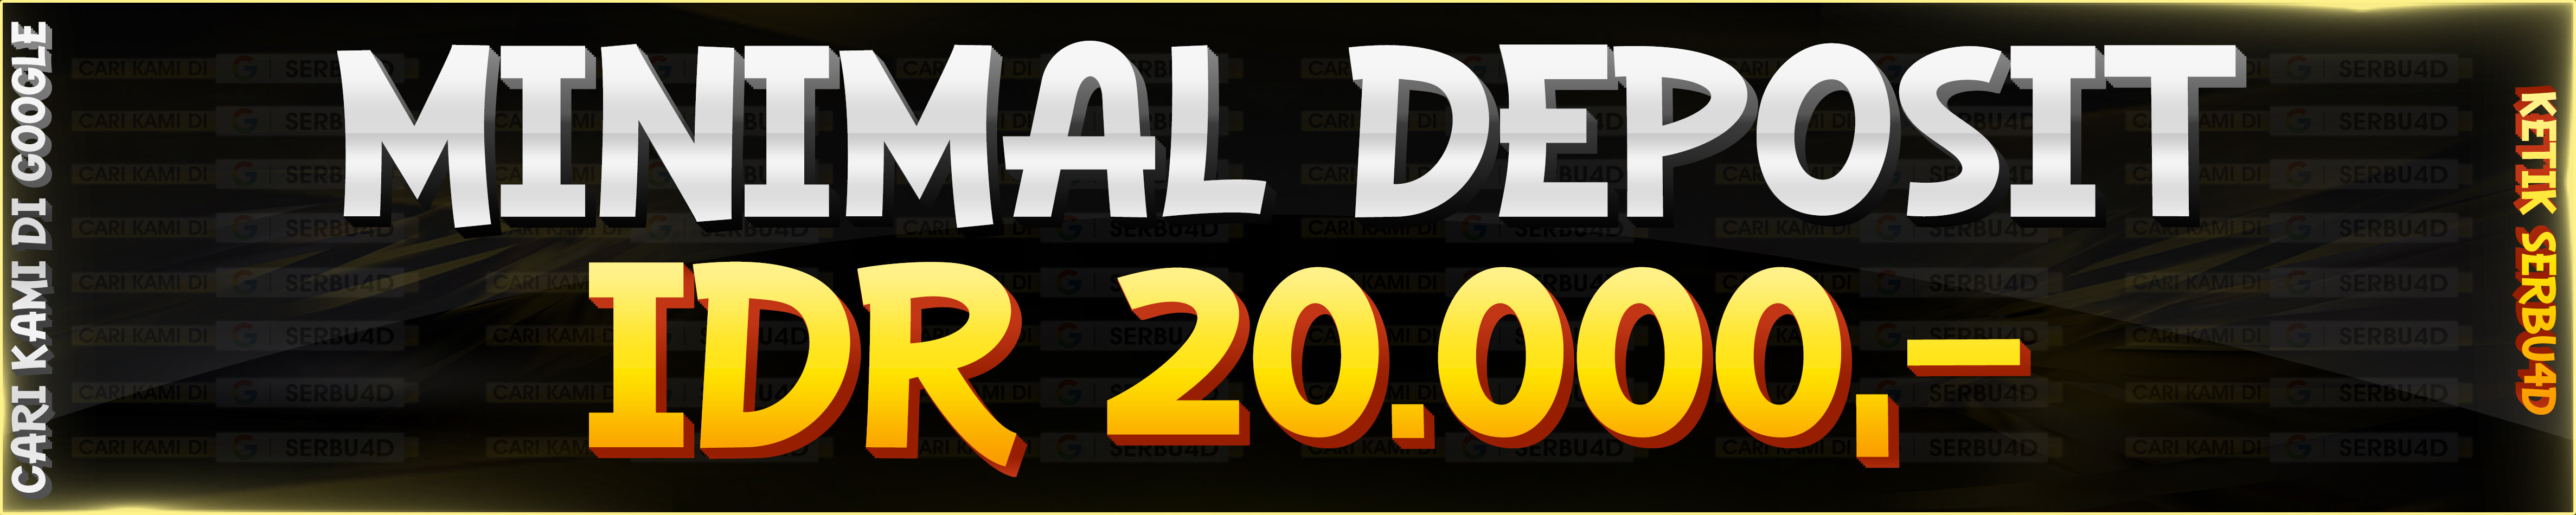 MINIMAL DEPOSIT 20000 SERBU4D